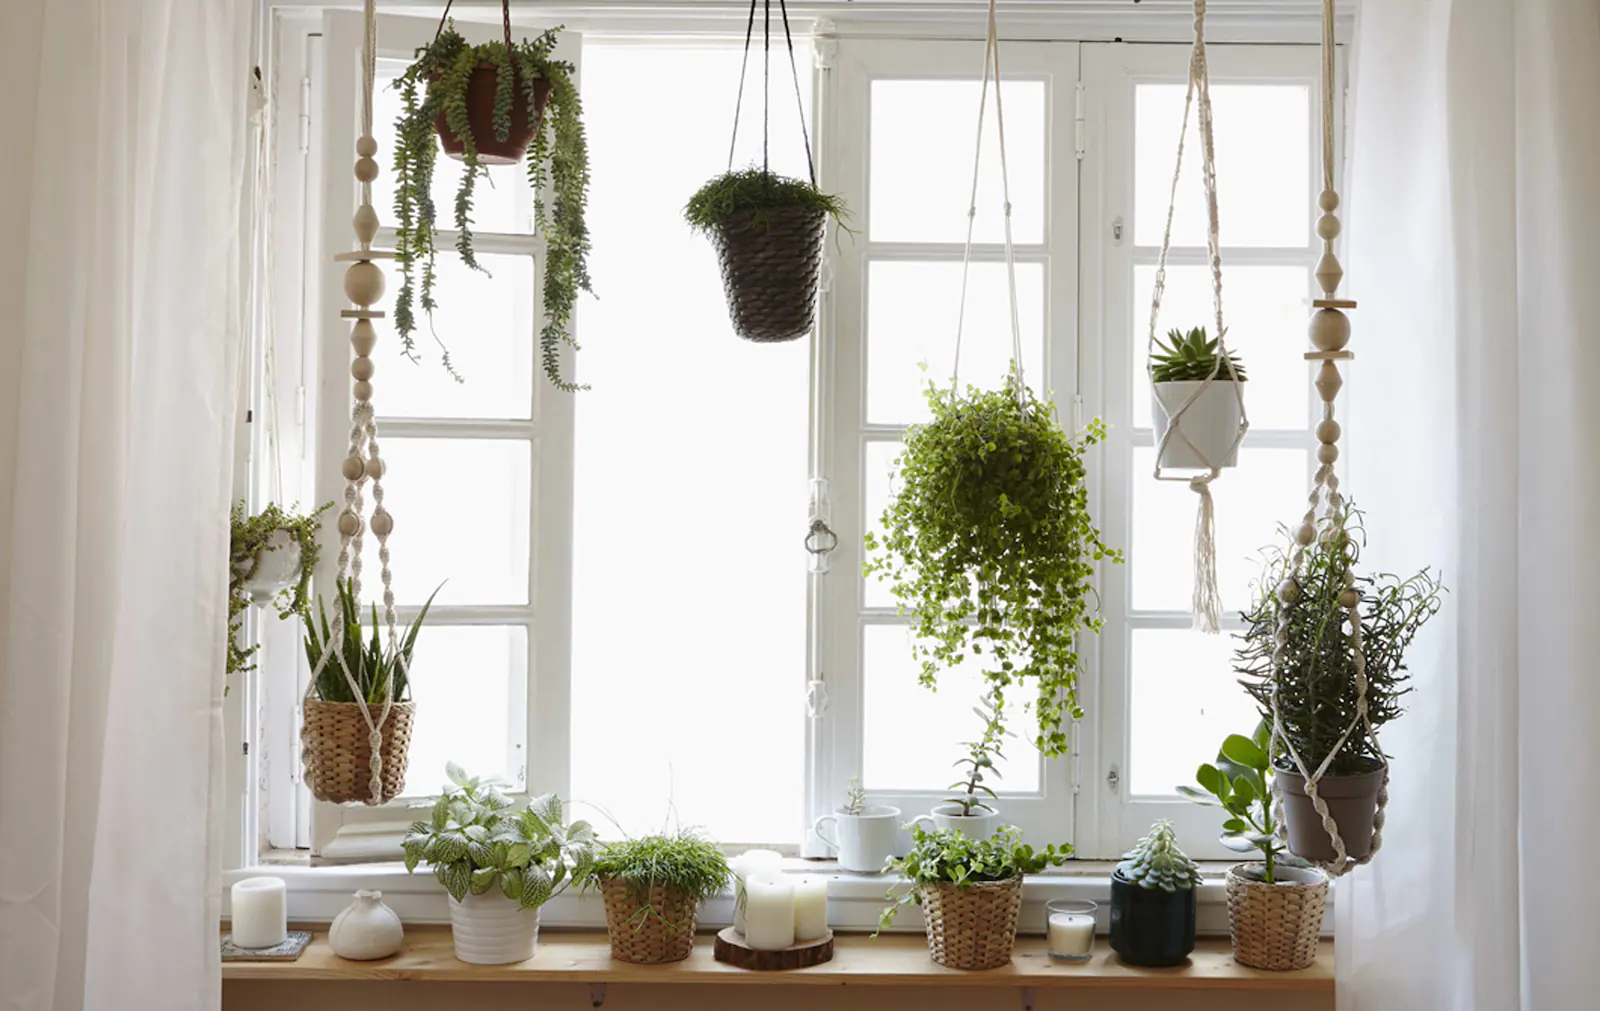 Ikea ways to dress up a window grow-a-window-garden-at-home-27dda70085f260f135d8cd51a0baaaa3